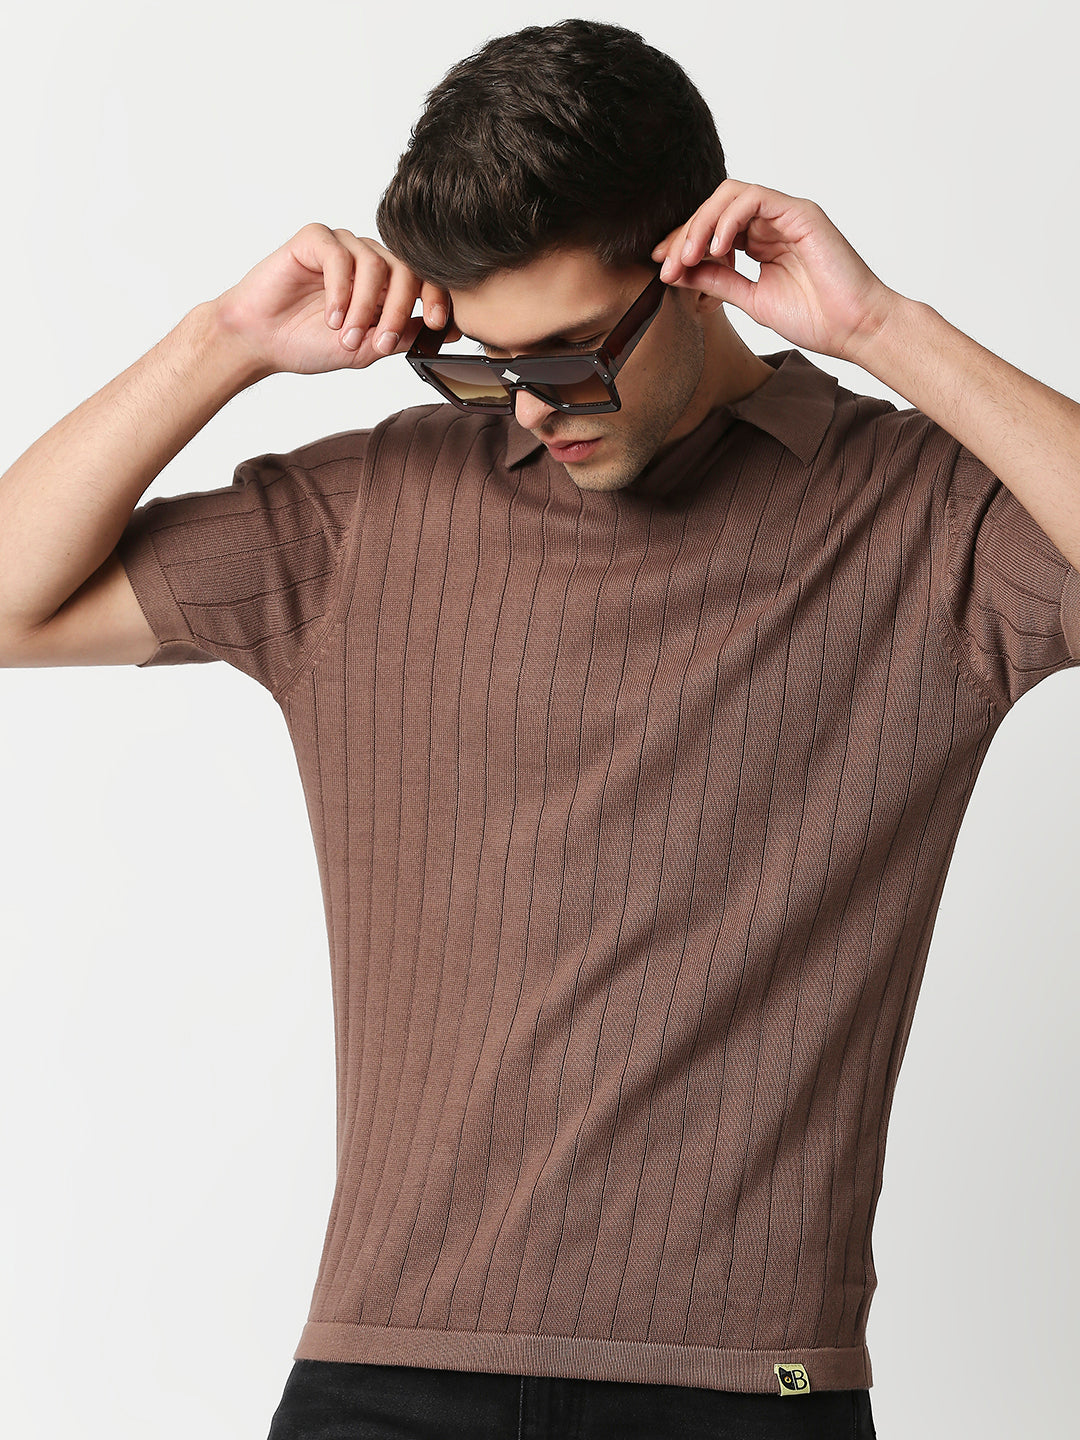 Buy Blamblack Men's collar Flat Knit Half Sleeves Brown Color T Shirt